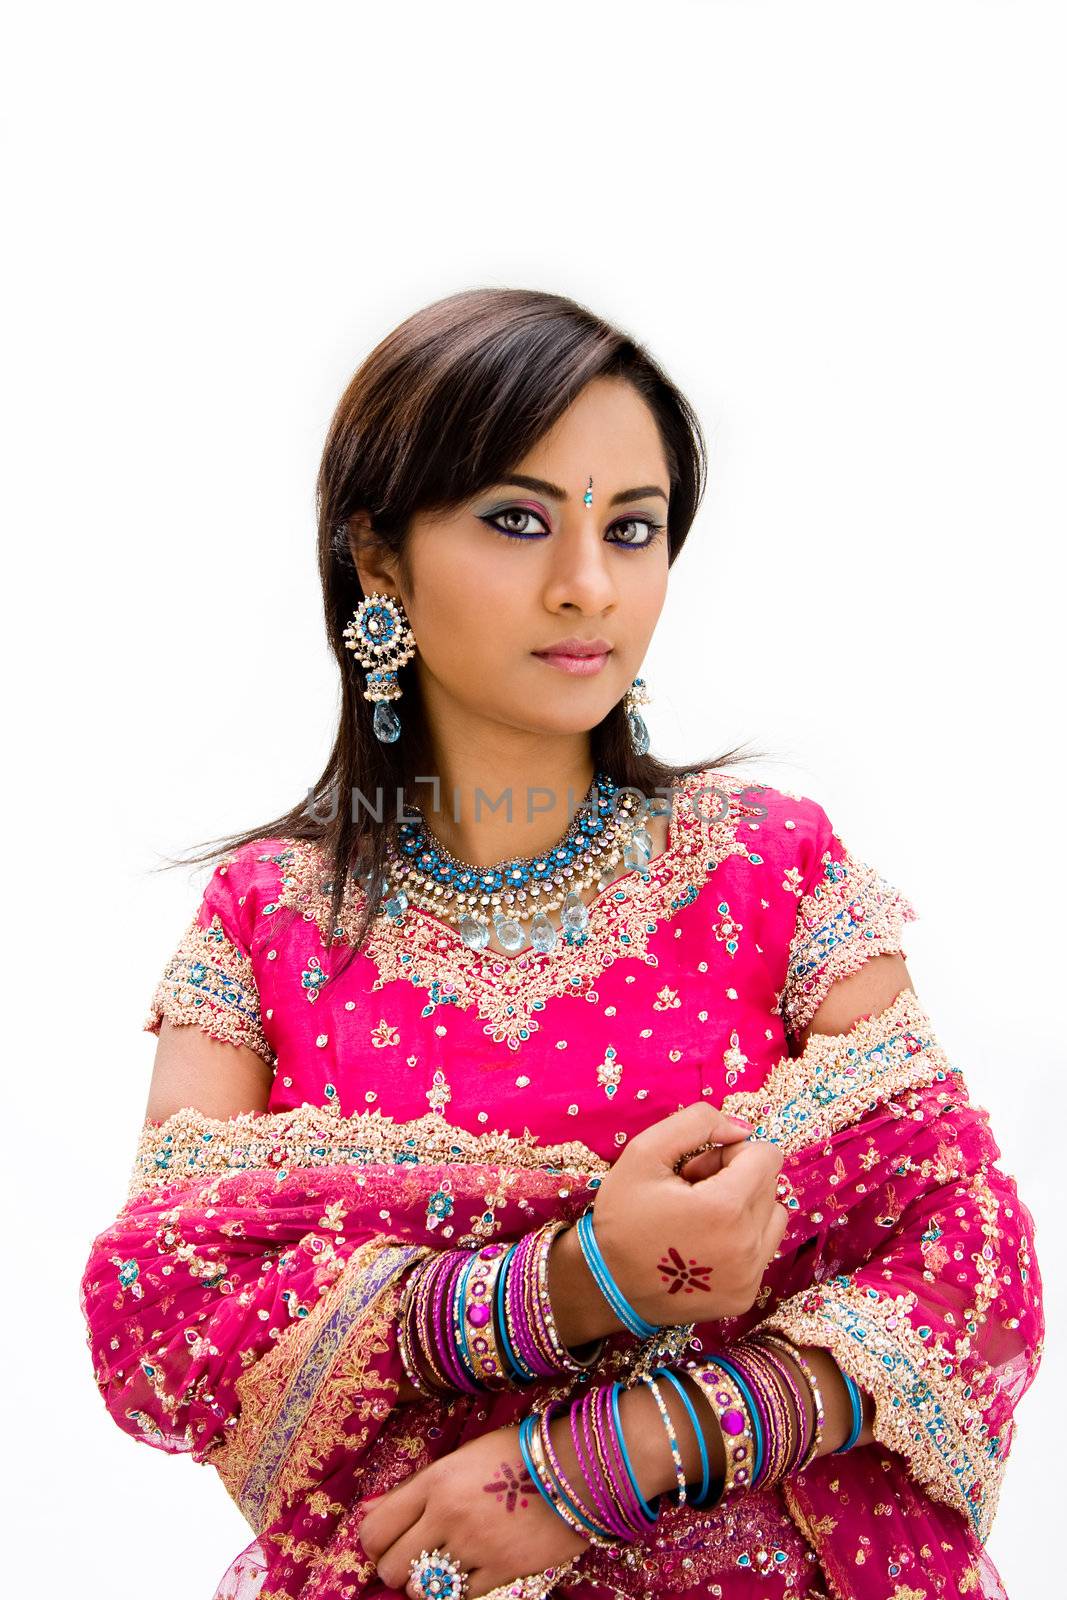 Beautiful Bangali bride by phakimata